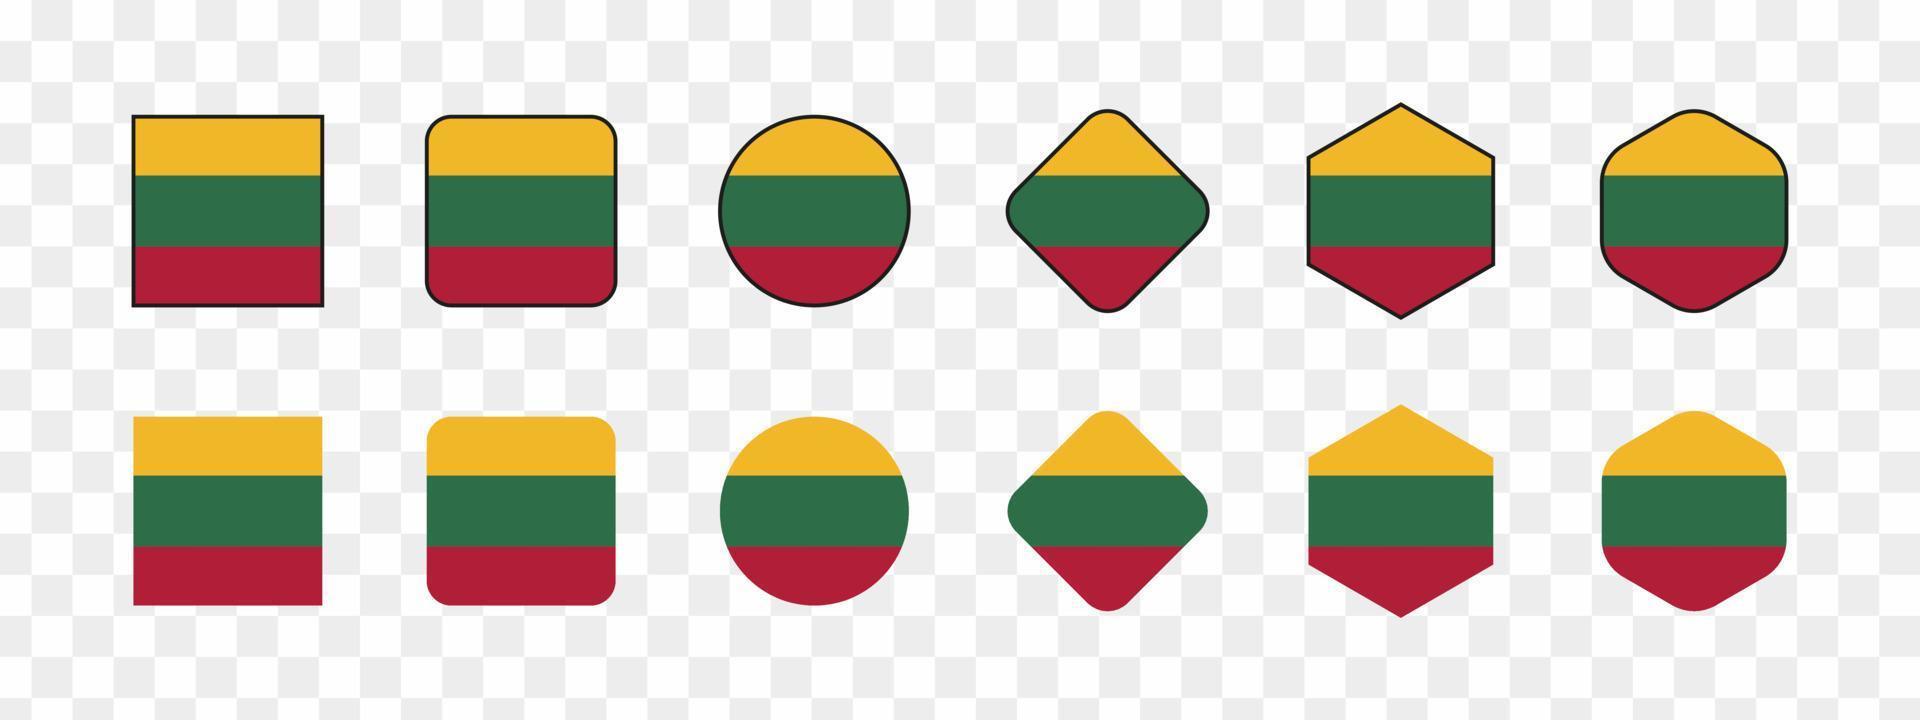 Bandeira da Lituânia isolada. ícone de bandeira da Lituânia. ilustração vetorial vetor